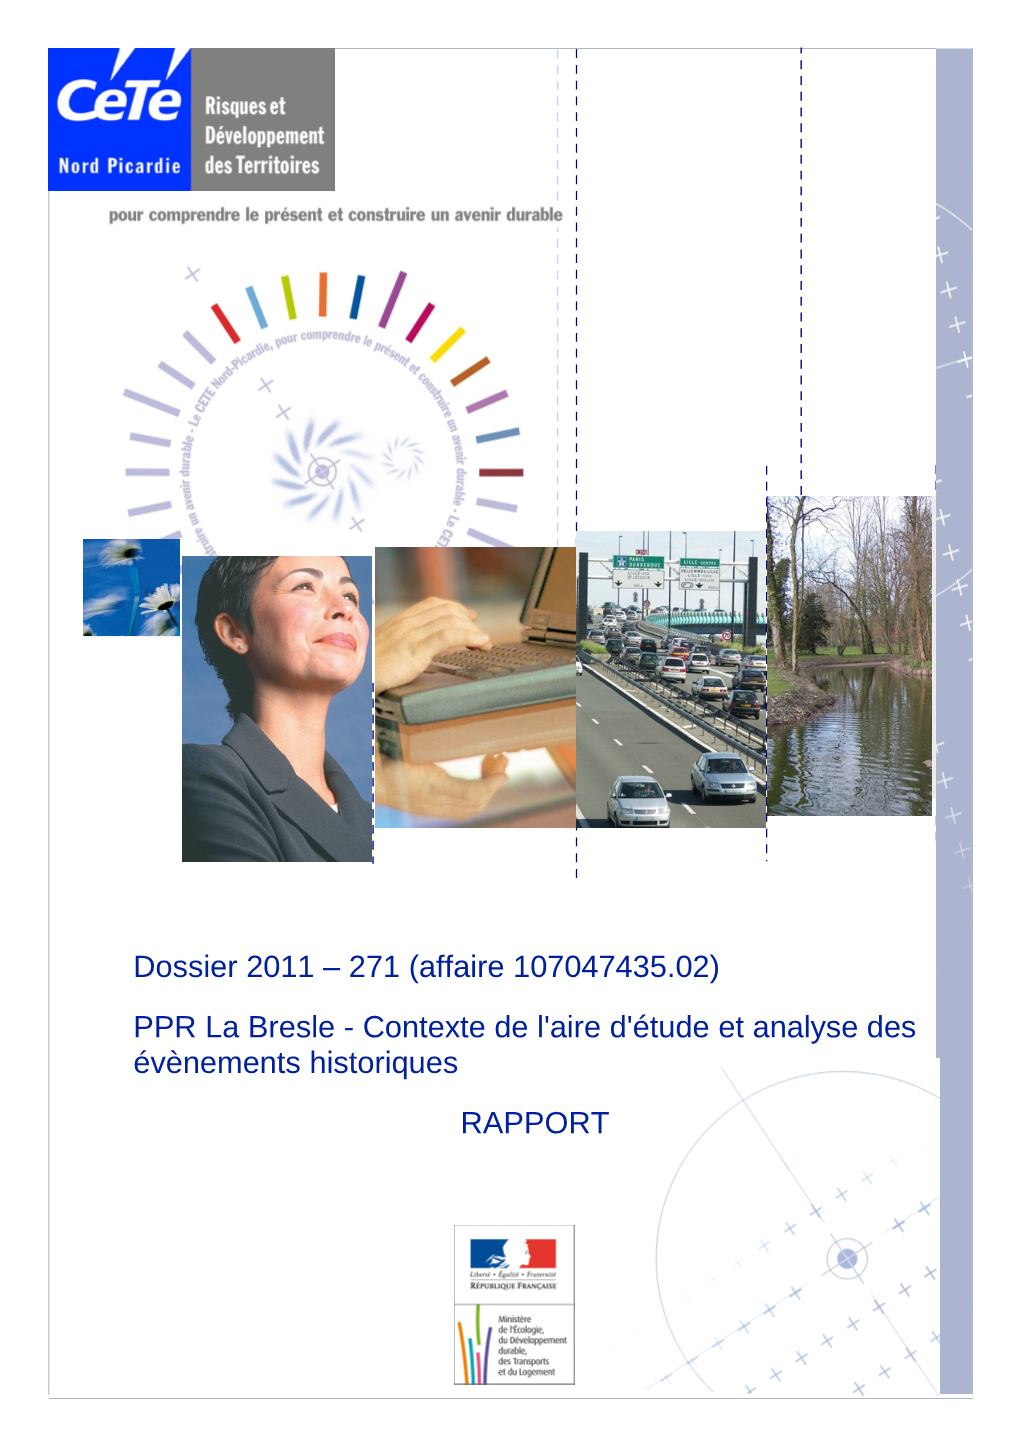 Dossier 2011 – 271 (Affaire 107047435.02) PPR La Bresle - Contexte De L'aire D'étude Et Analyse Des Évènements Historiques RAPPORT